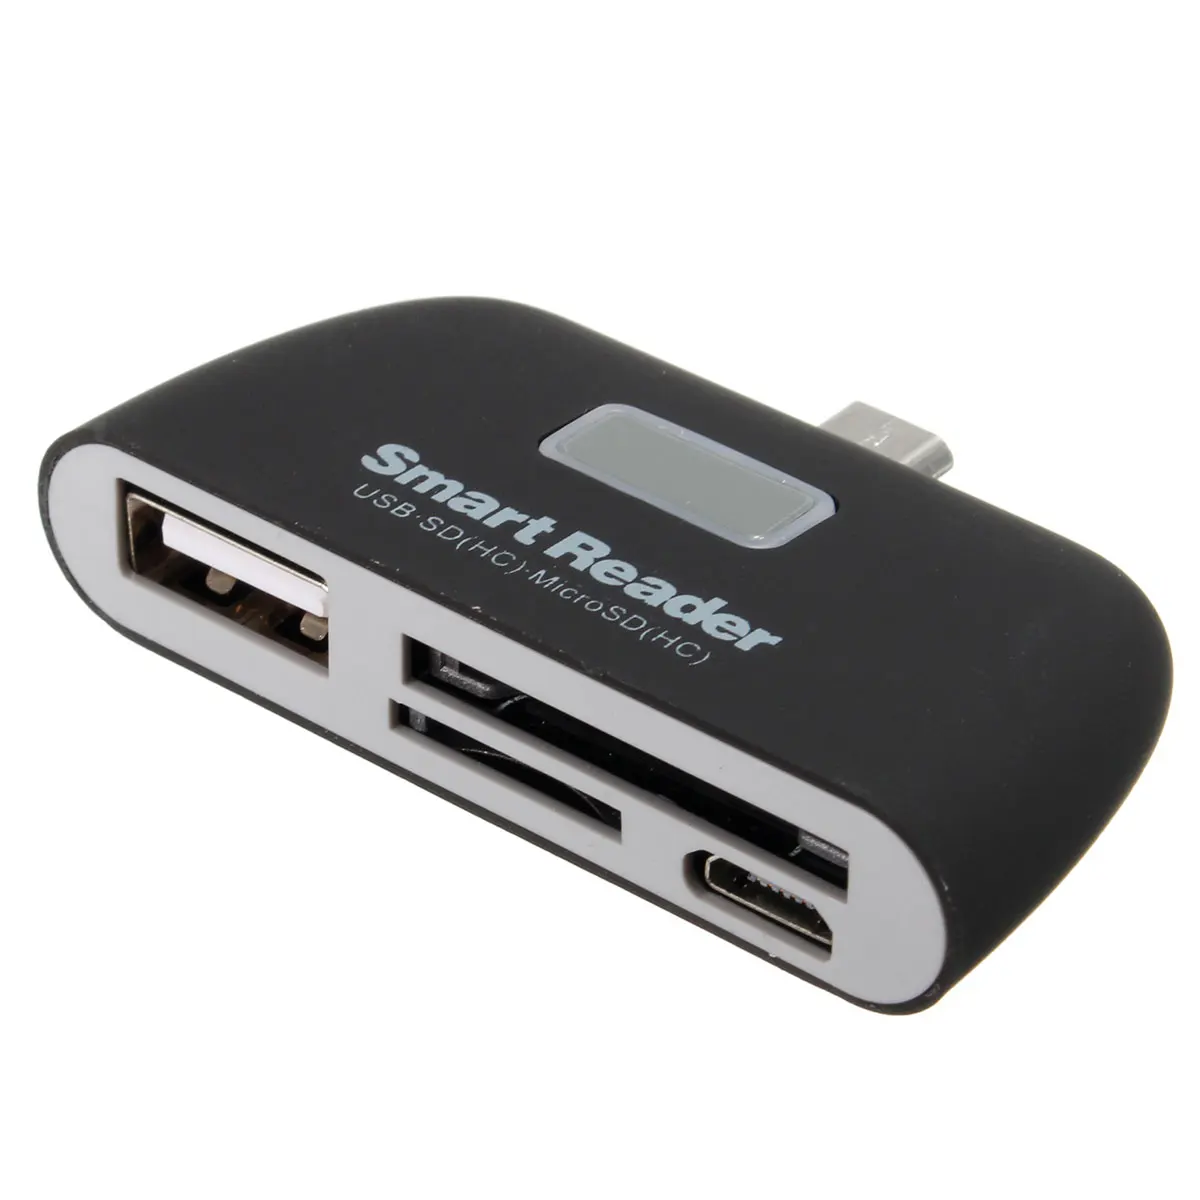 Универсальный Micro USB SD TF кардридер адаптер разъем светодиодный светильник OTG USB2.0 высокая скорость для samsung Edge Android смартфон